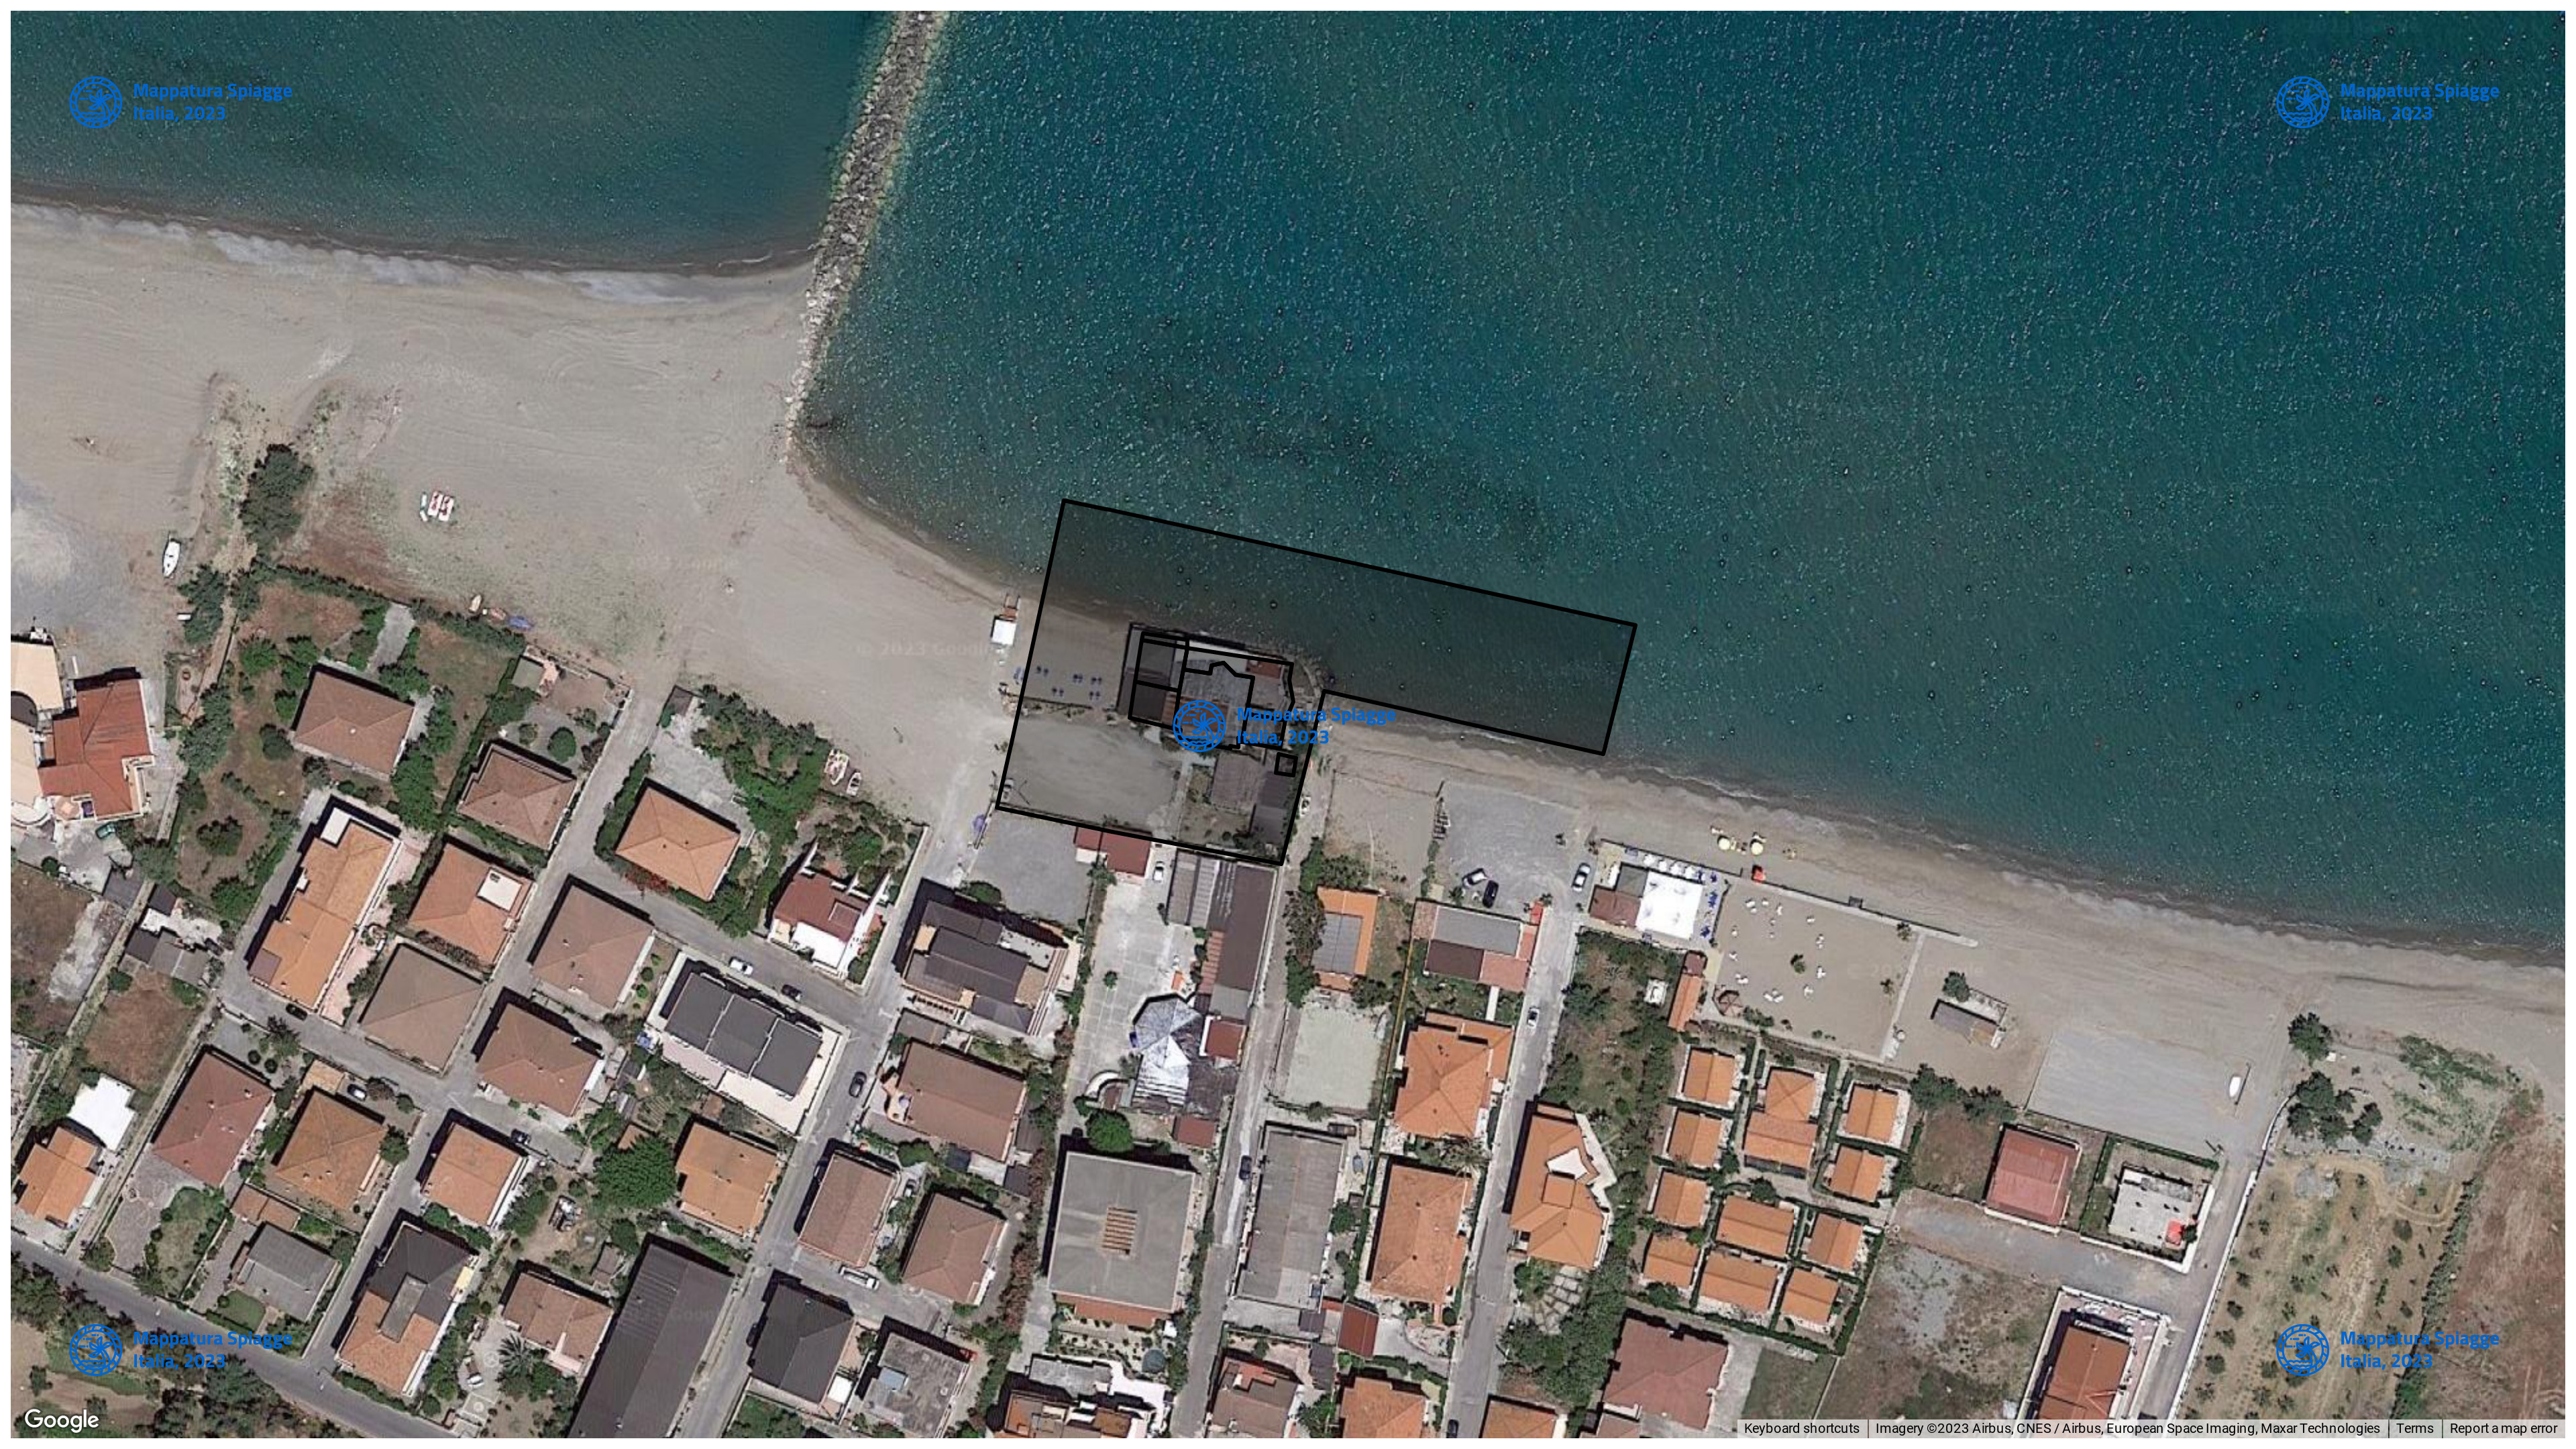 Foto Satellitare - Google Maps - Comune Cariati, Concessione: N. 1 / 2013 del 19-09-2023